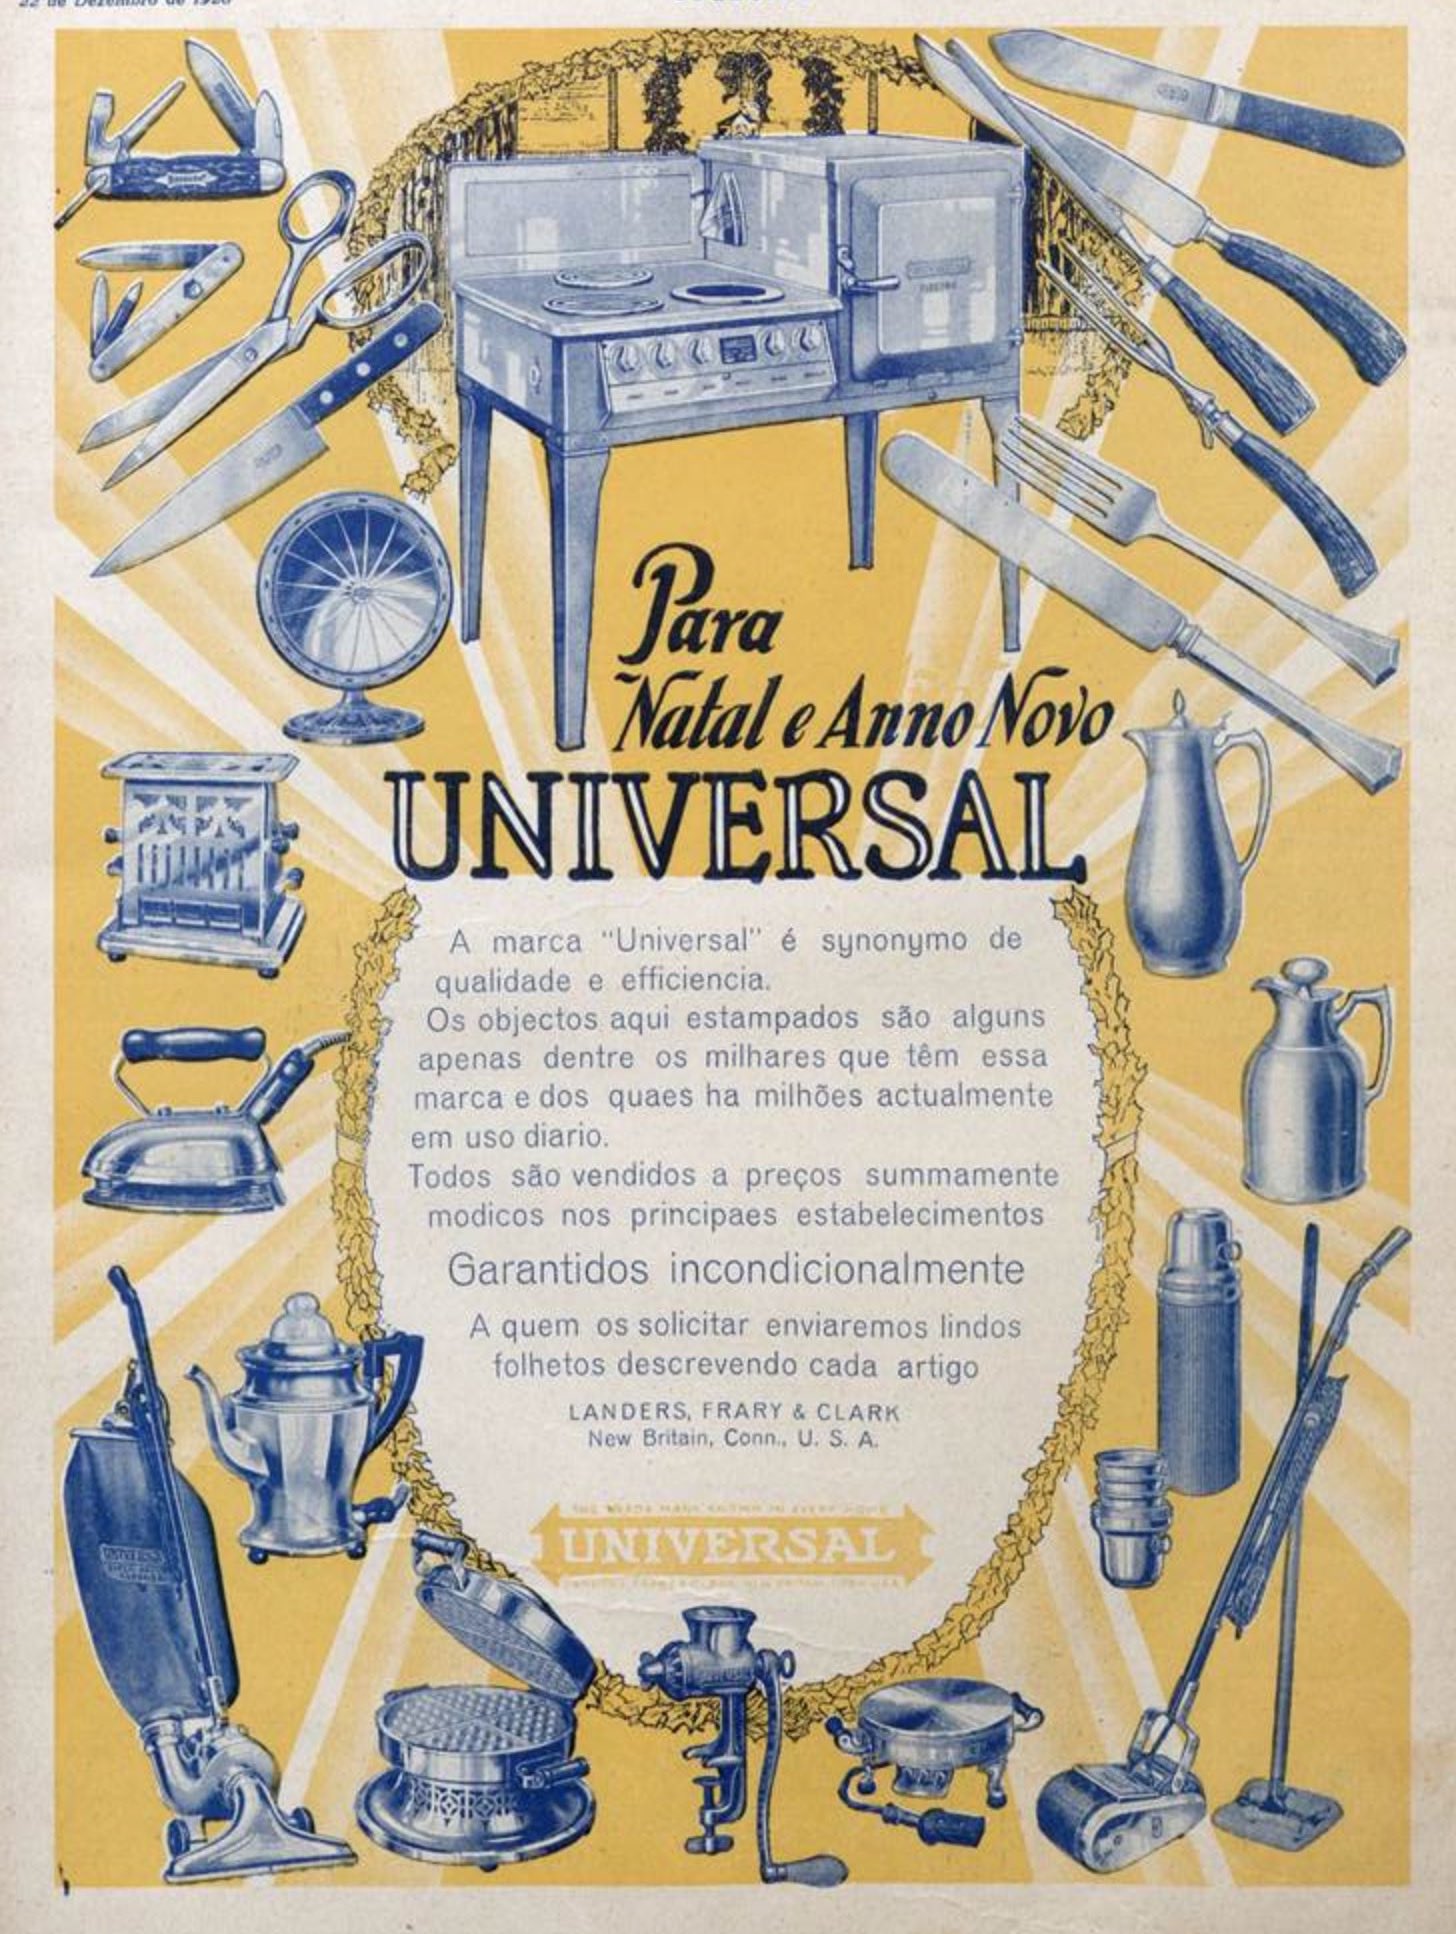 Anúncio veiculado em 1928 apresentando as utilidades do lar da marca Universal